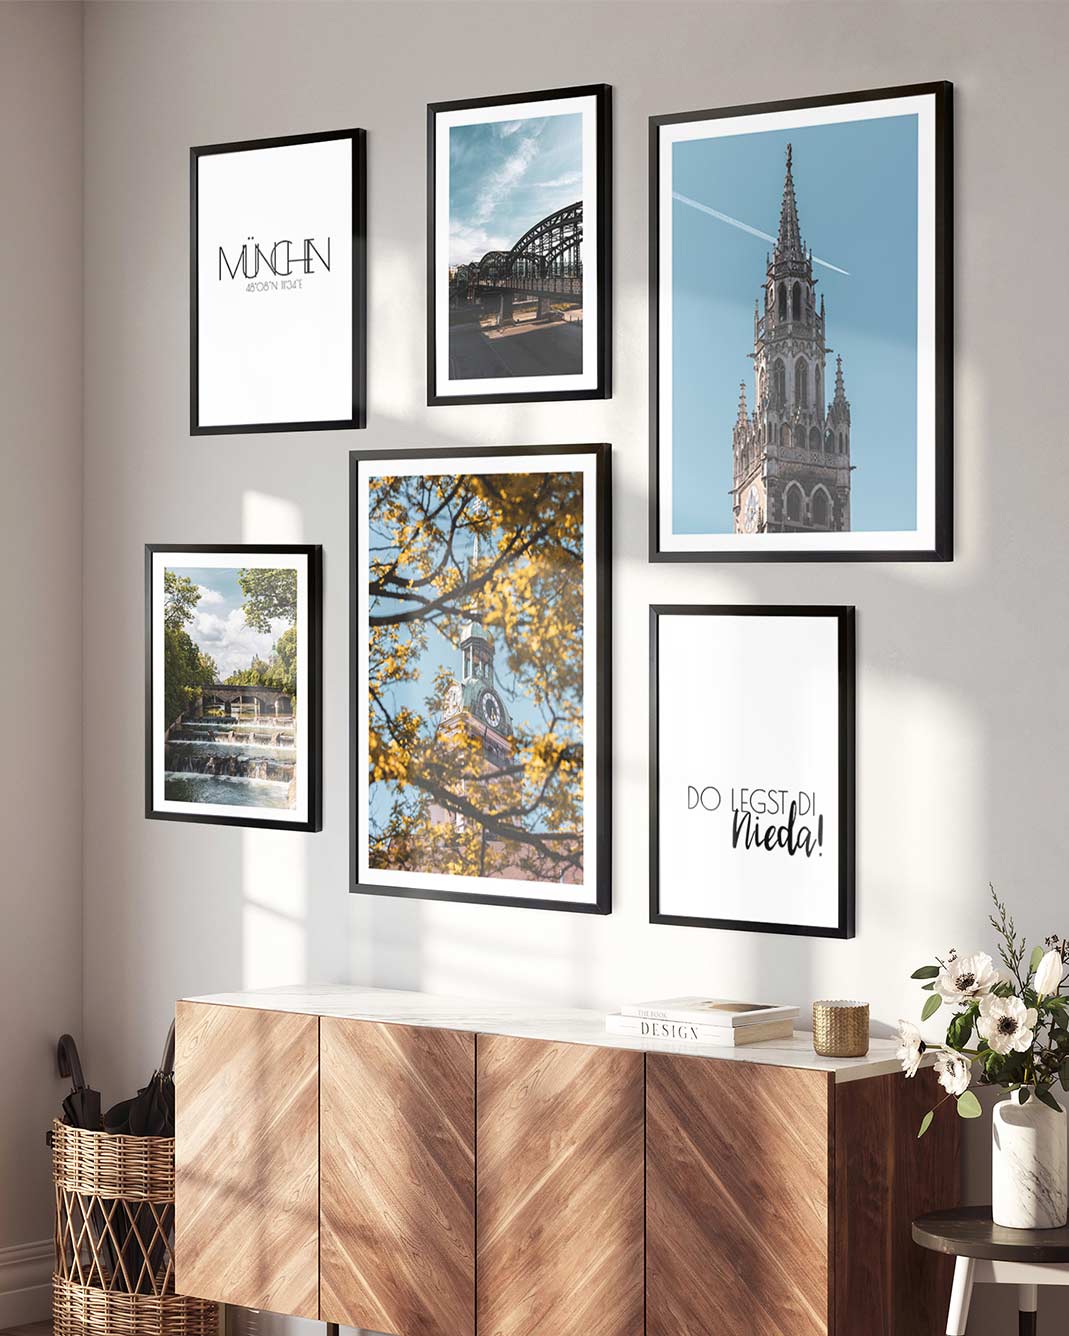 Fertiges Poster Set von München in schwarzen Rahmen im Wohnzimmer über der Kommode. Fotografien der Sehenswürdigkeiten.